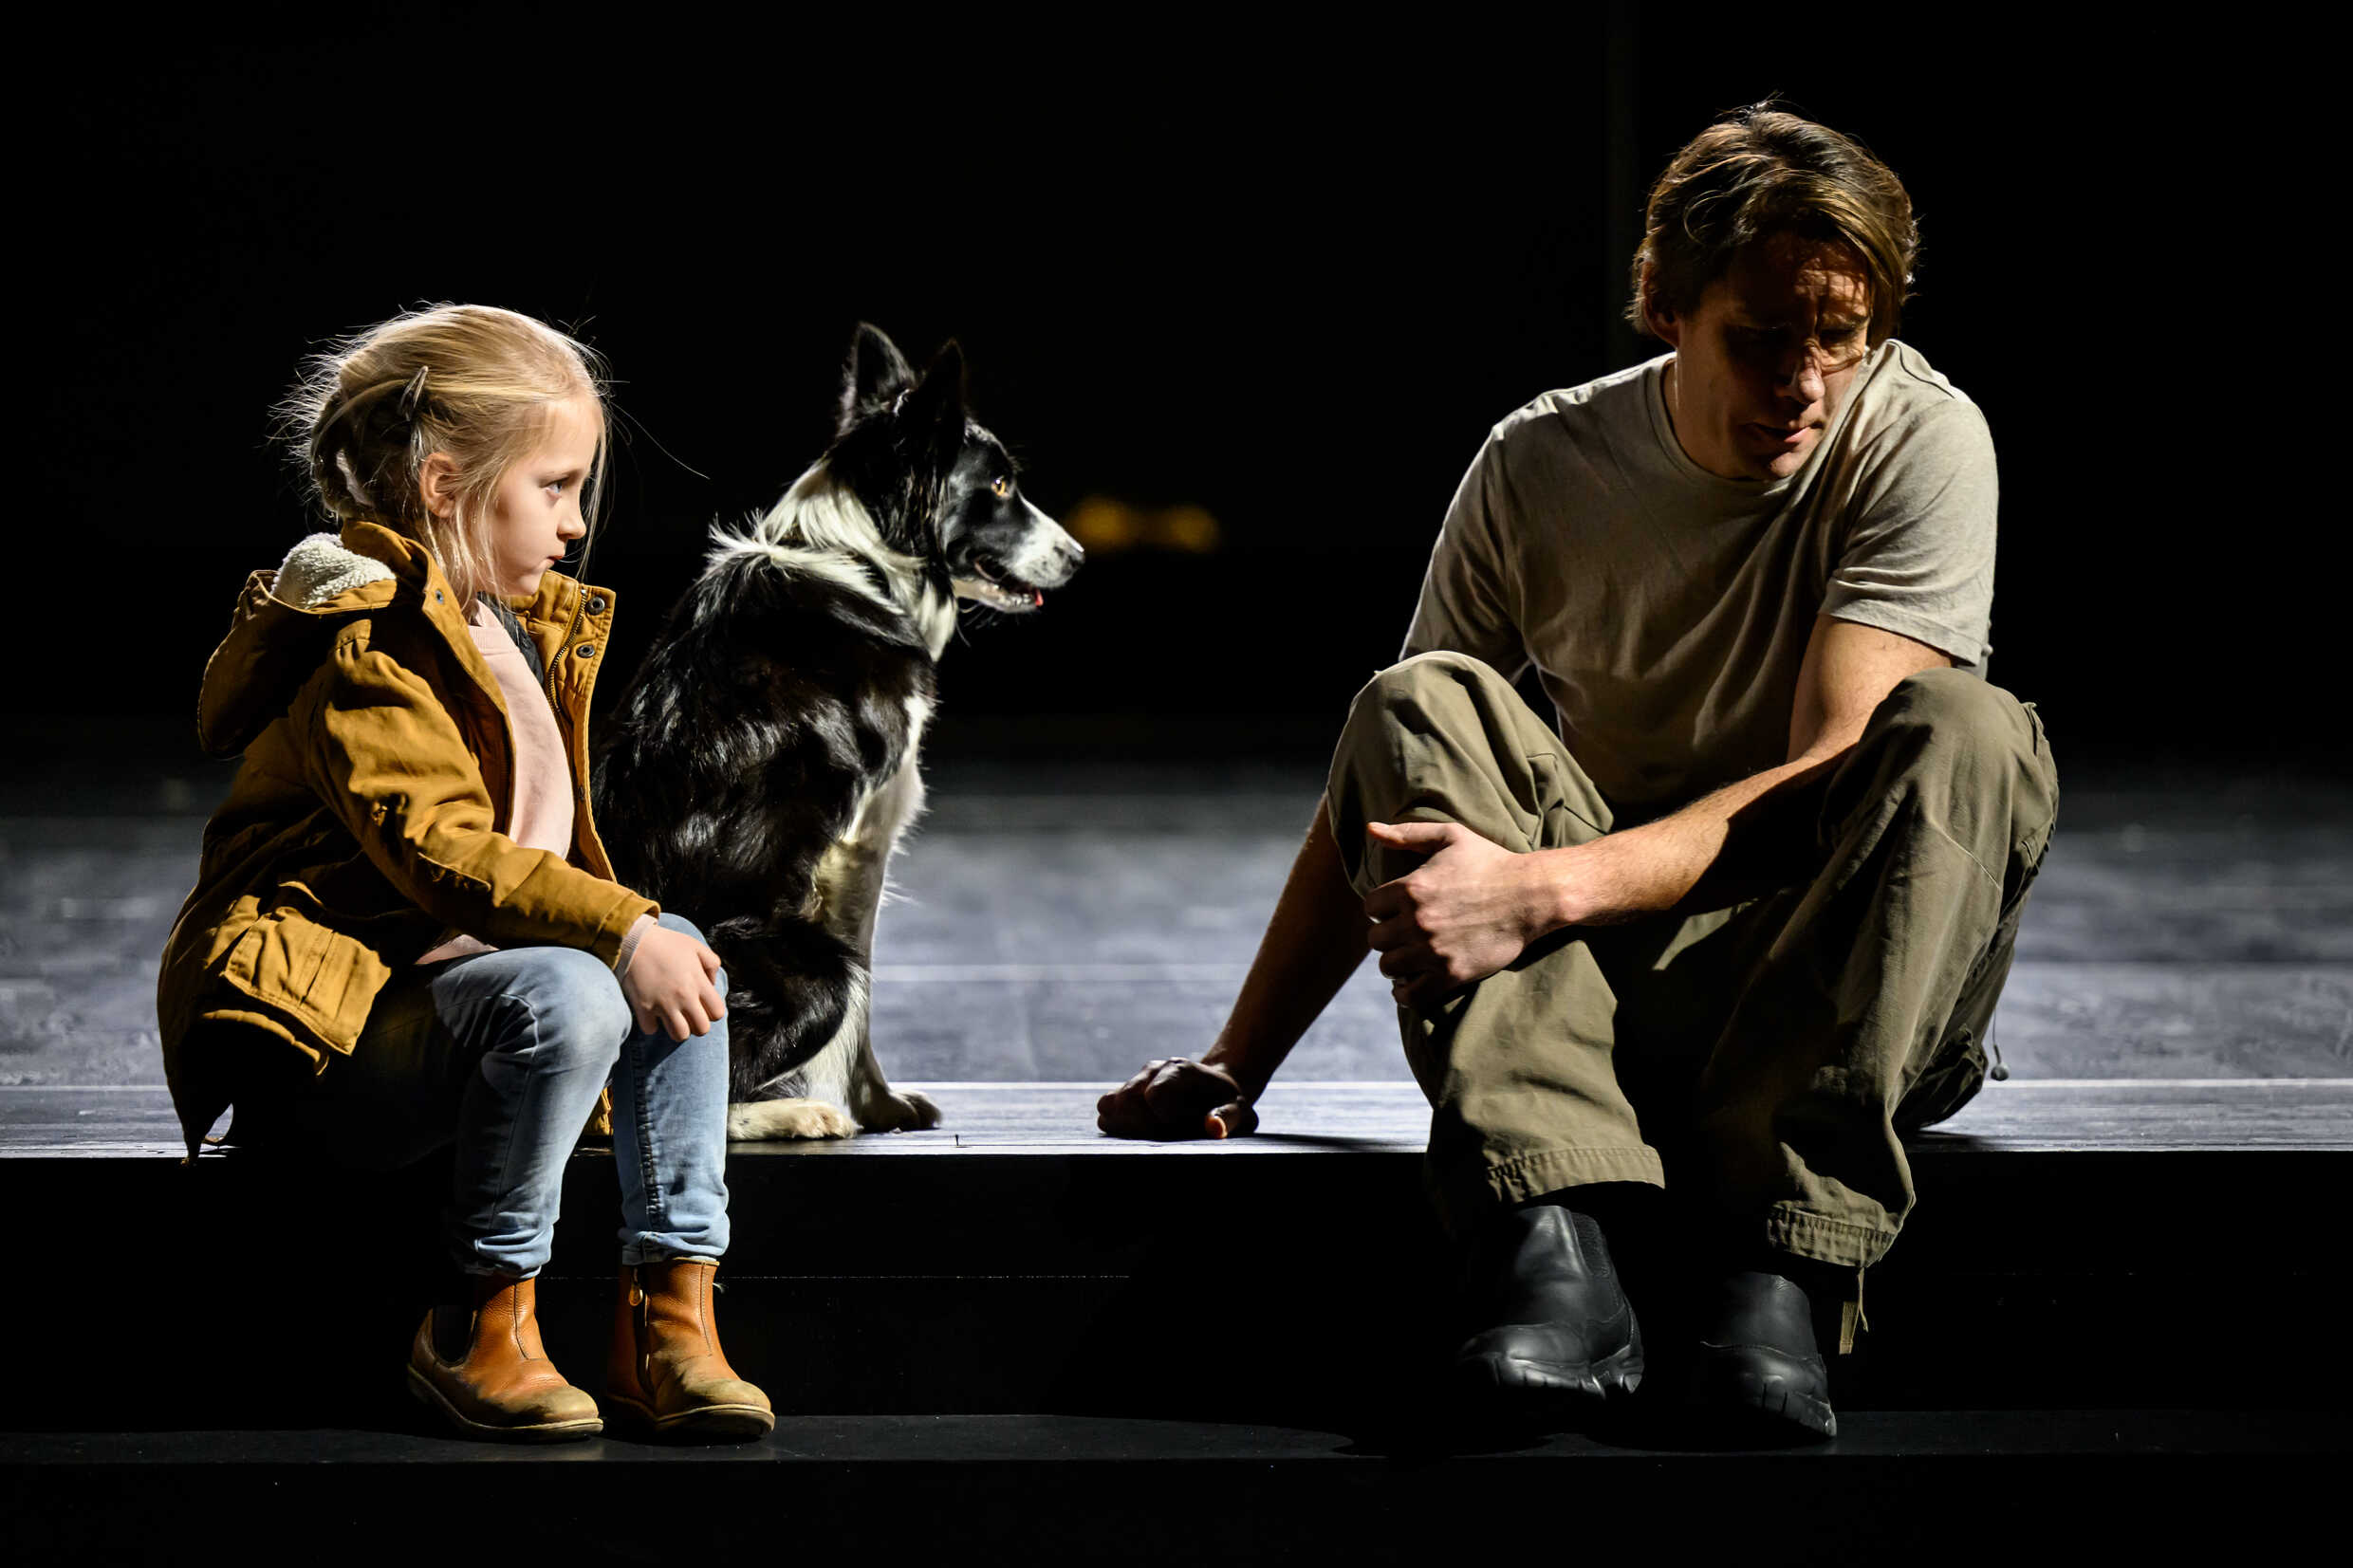 Idun Djupsjö, hunden Dansa och Erik Ehn i Jakten, urpremiär 2 december på Stora scenen, Kulturhuset Stadsteatern.